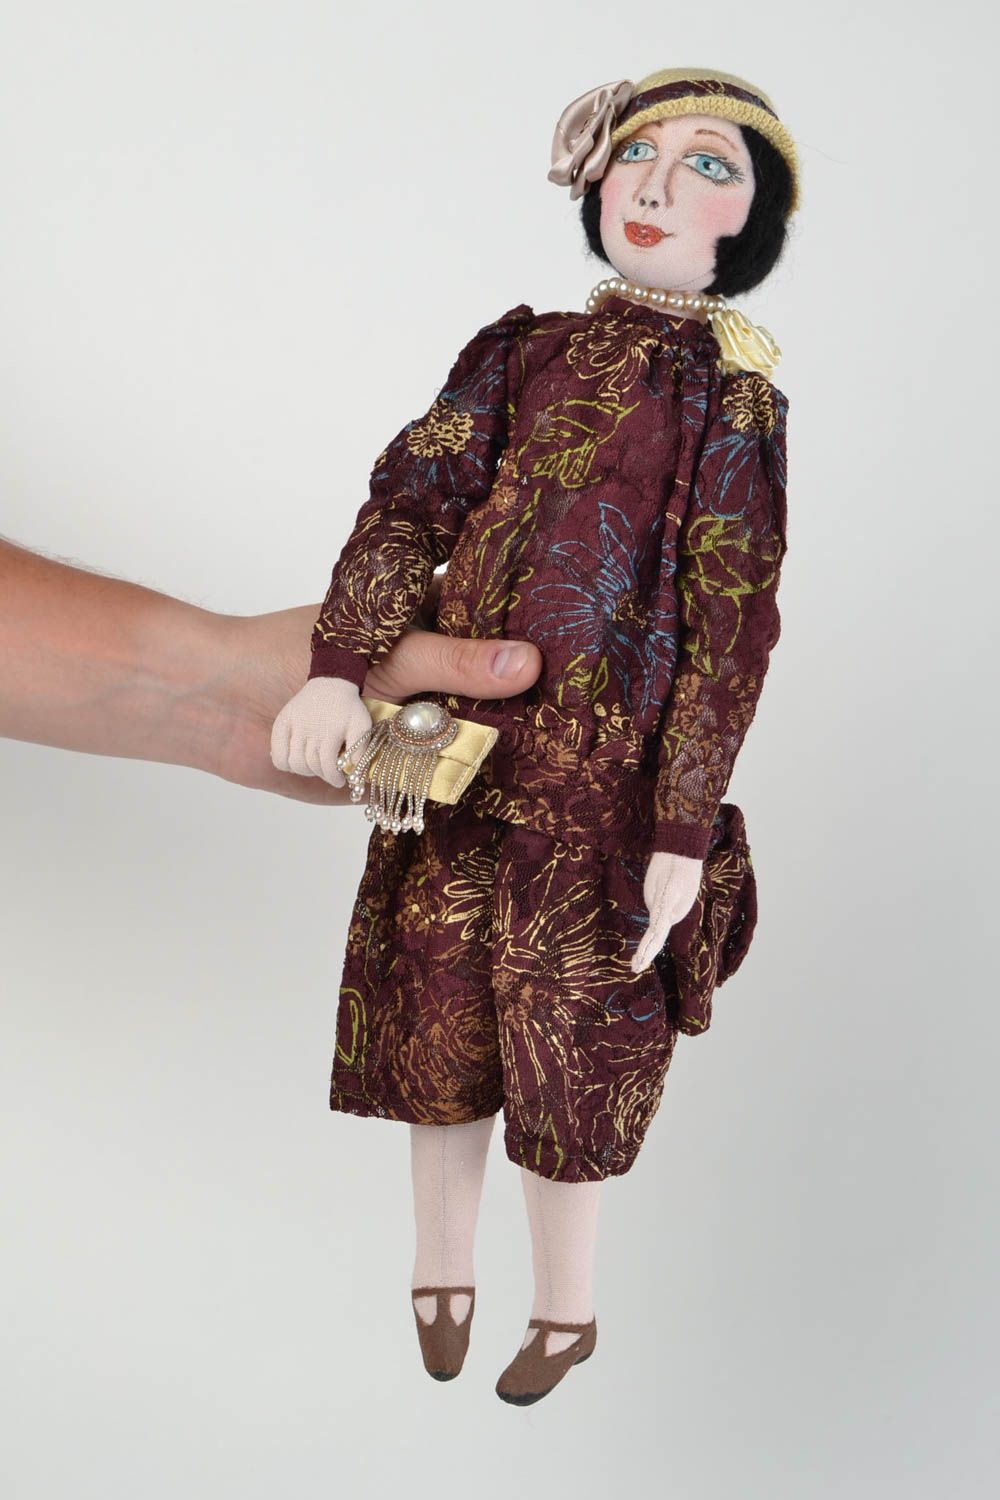 Designer handmade Puppe aus Textil für Kinder und Interieur handgeschaffene Anna foto 2